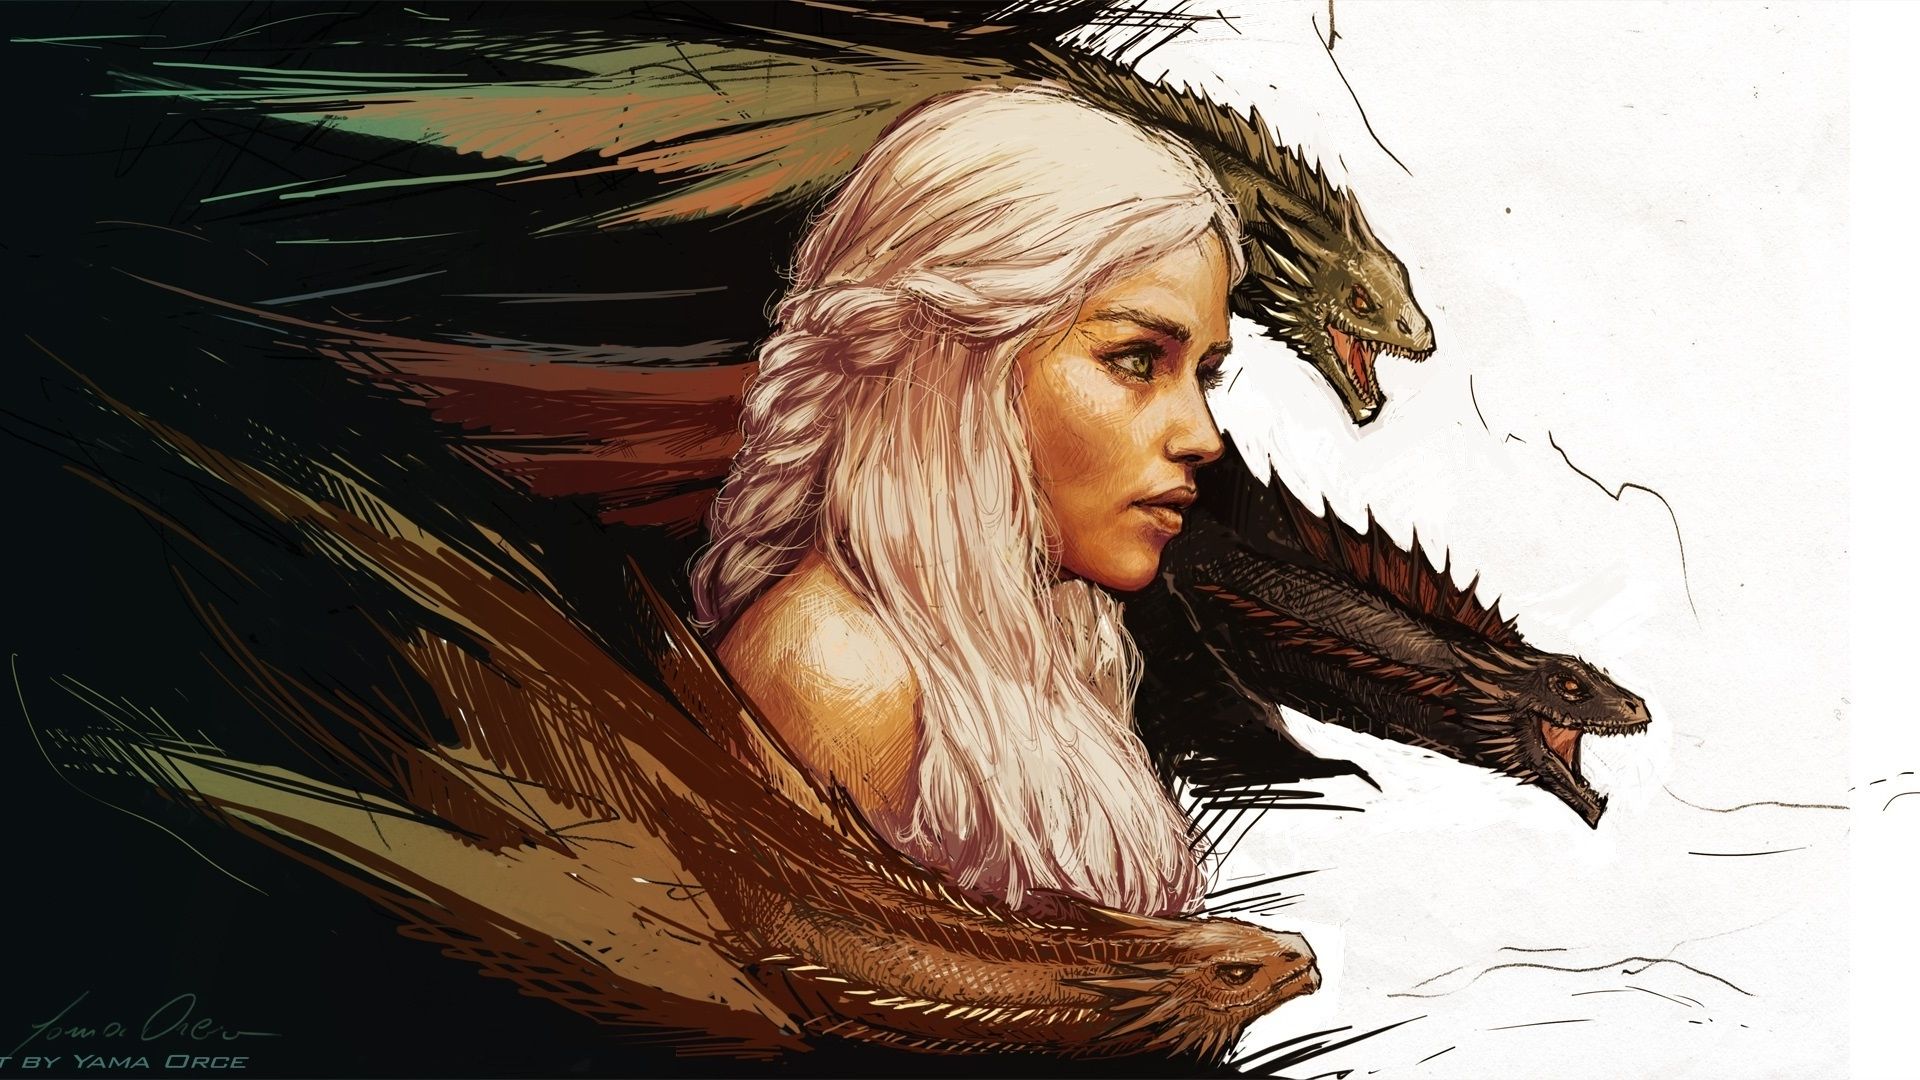 Wallpaper, women, blonde, dragon, Game of Thrones, Daenerys Targaryen, mother of dragons, artwork 1920x1080